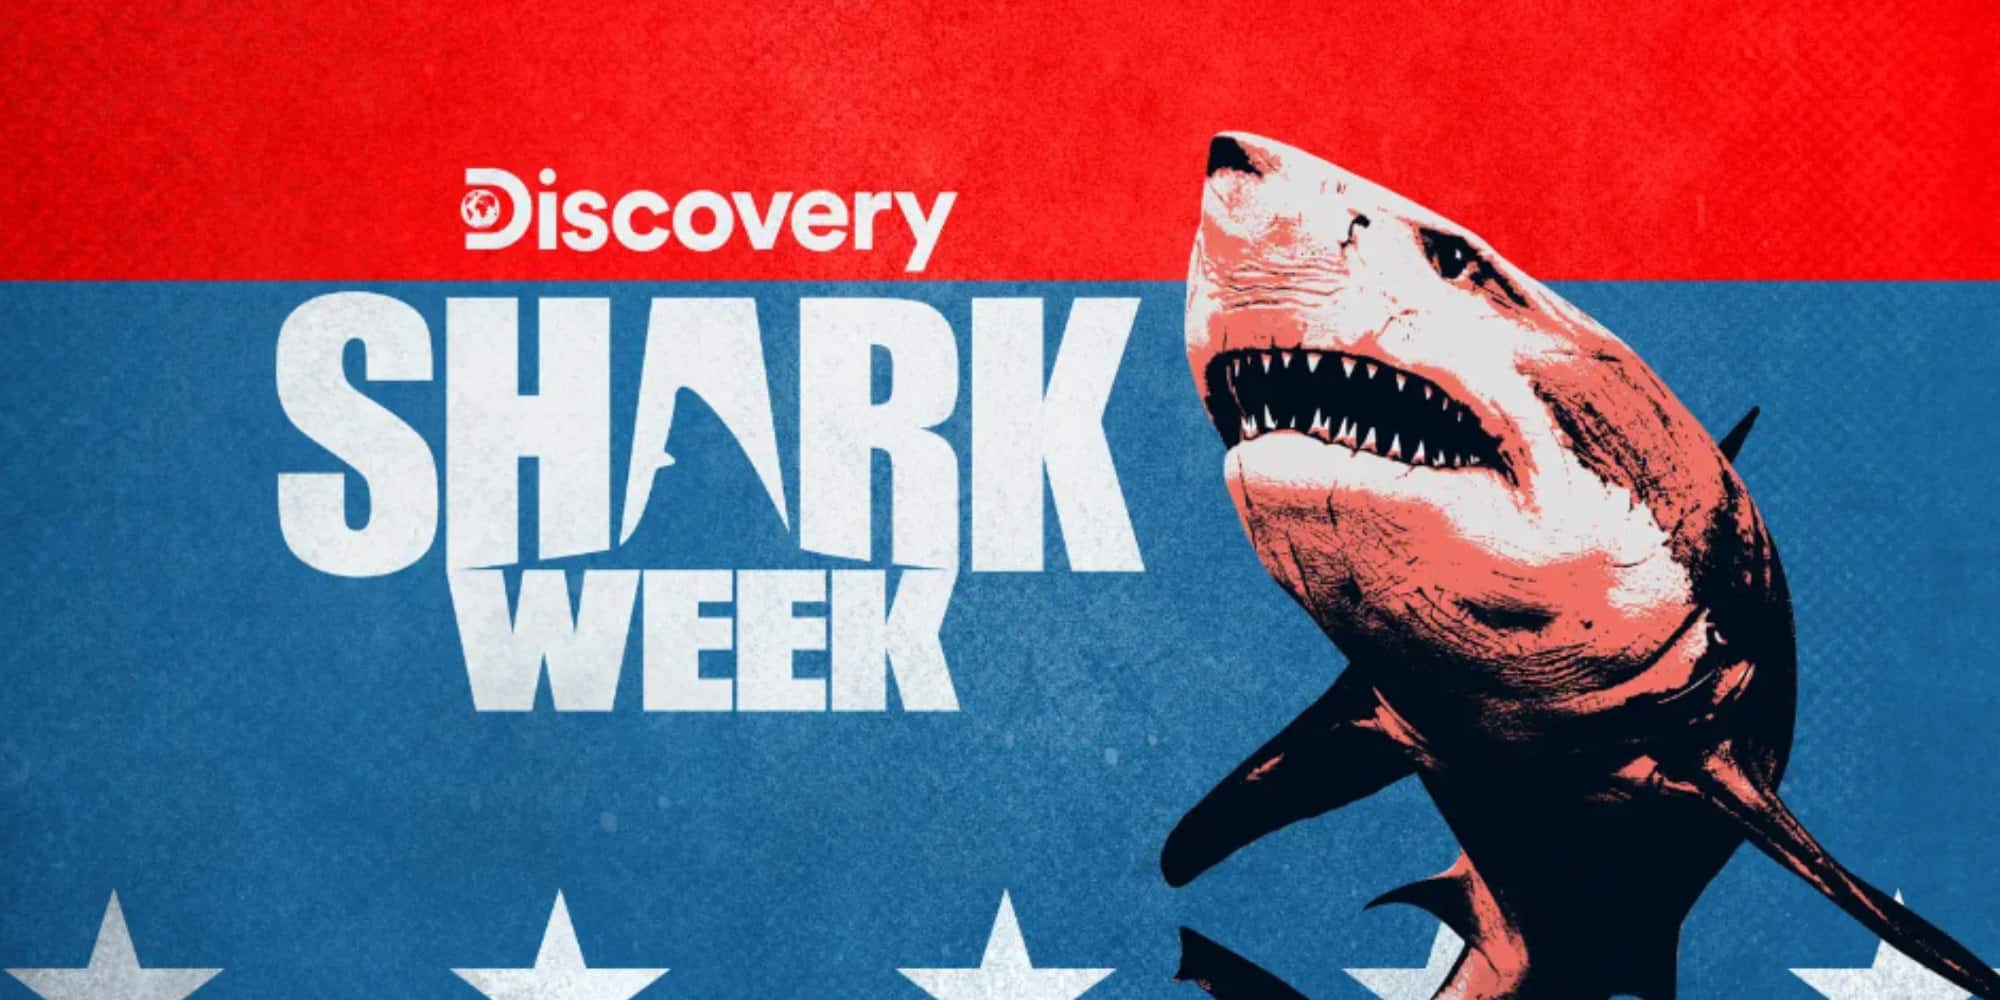 Shark Week Filming Locations Where Is The Documentary Filmed? OtakuKart